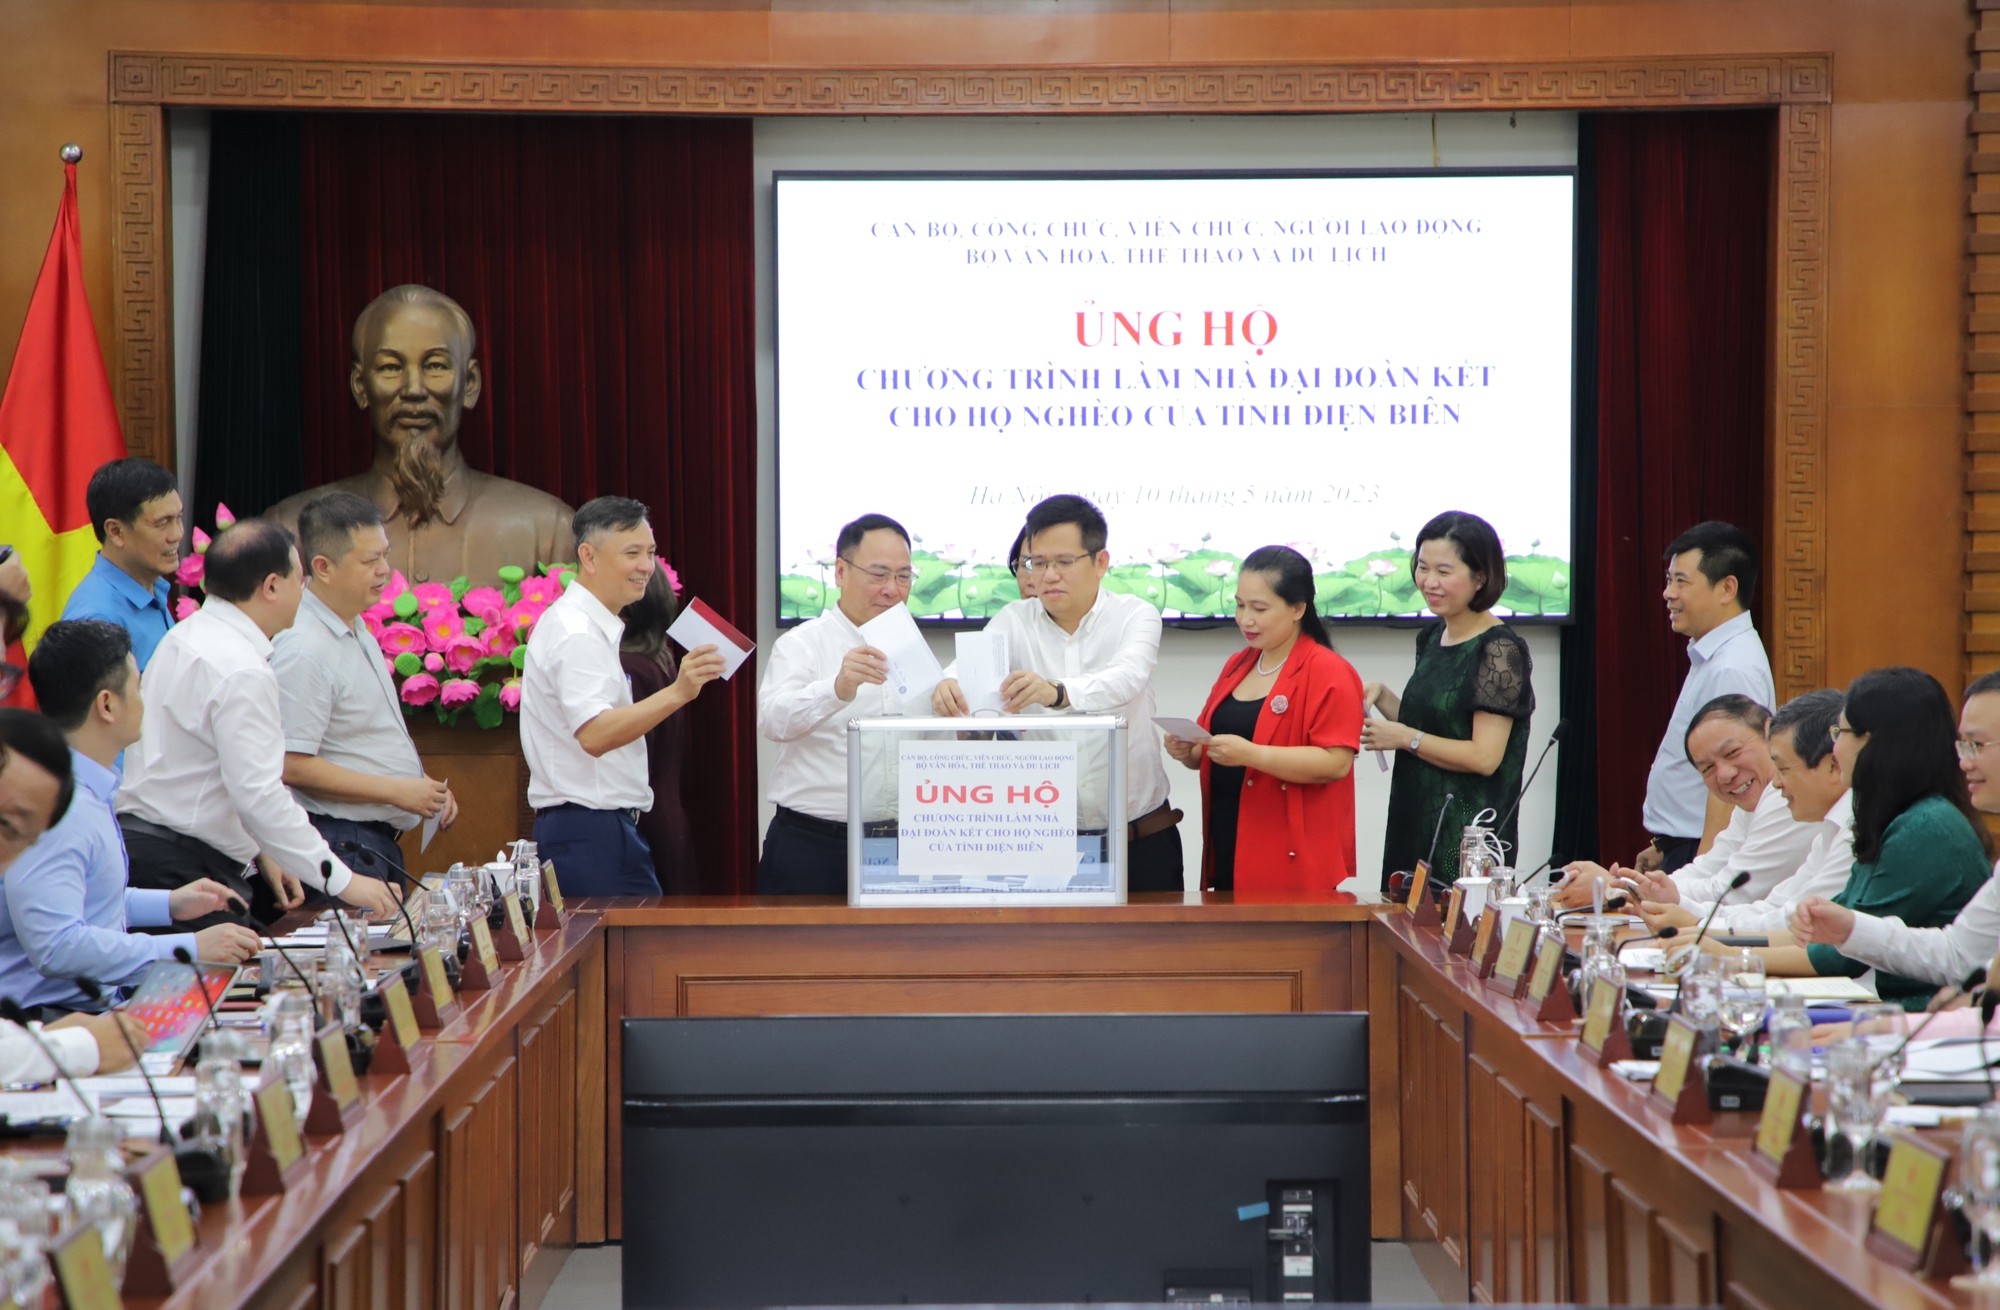 Bộ VHTTDL ủng hộ Chương trình xây nhà đại đoàn kết cho hộ nghèo của tỉnh Điện Biên - Ảnh 6.